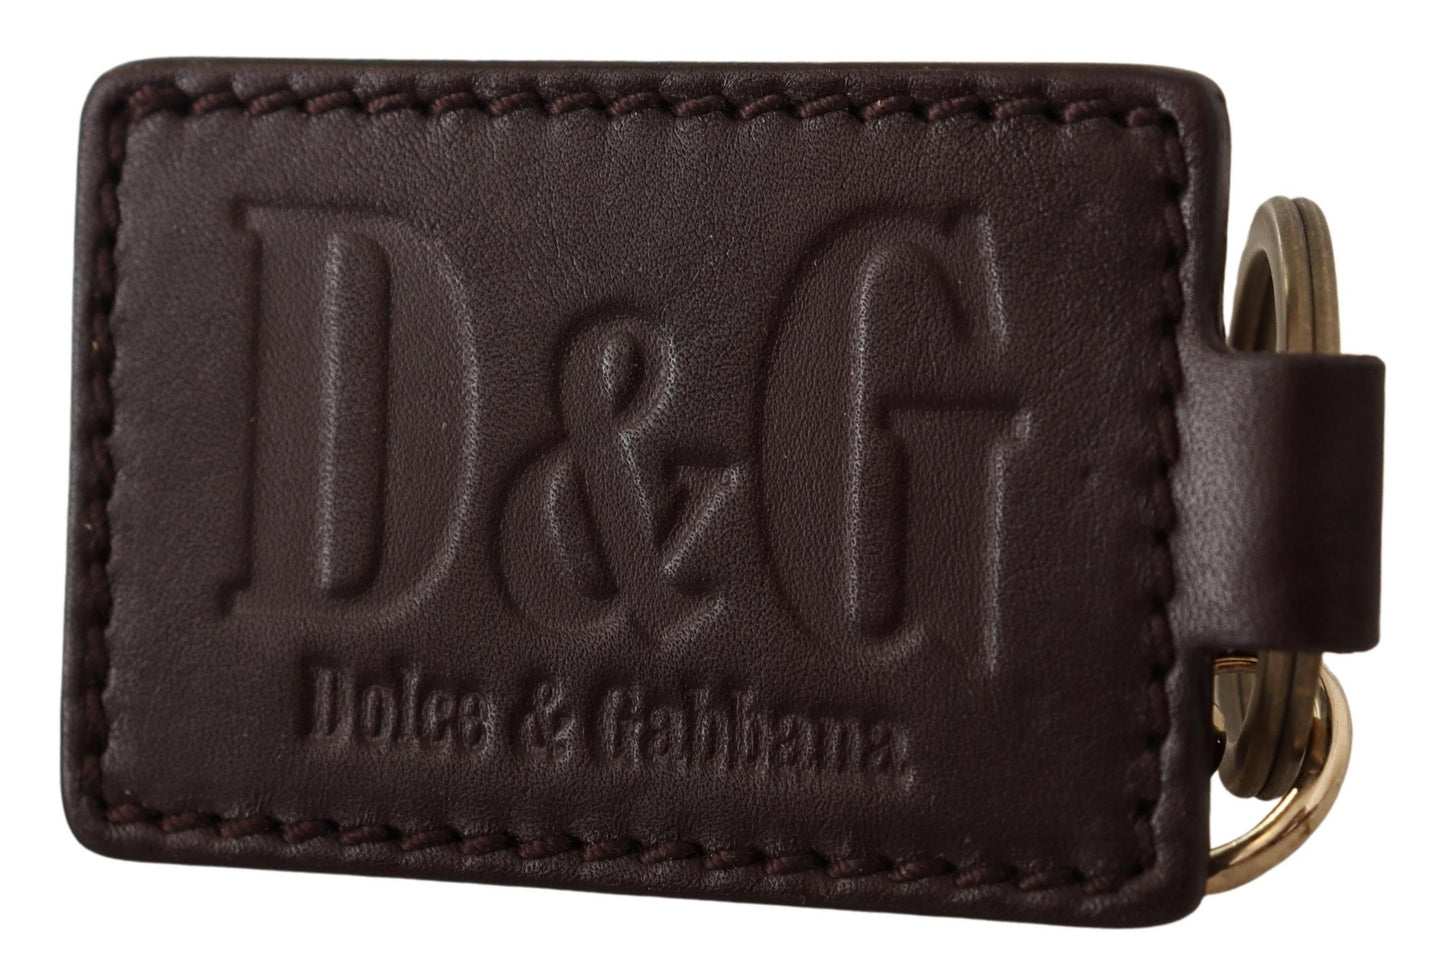 Dolce & Gabbana Brown in pelle marrone logo ad anello metallico portachiavi